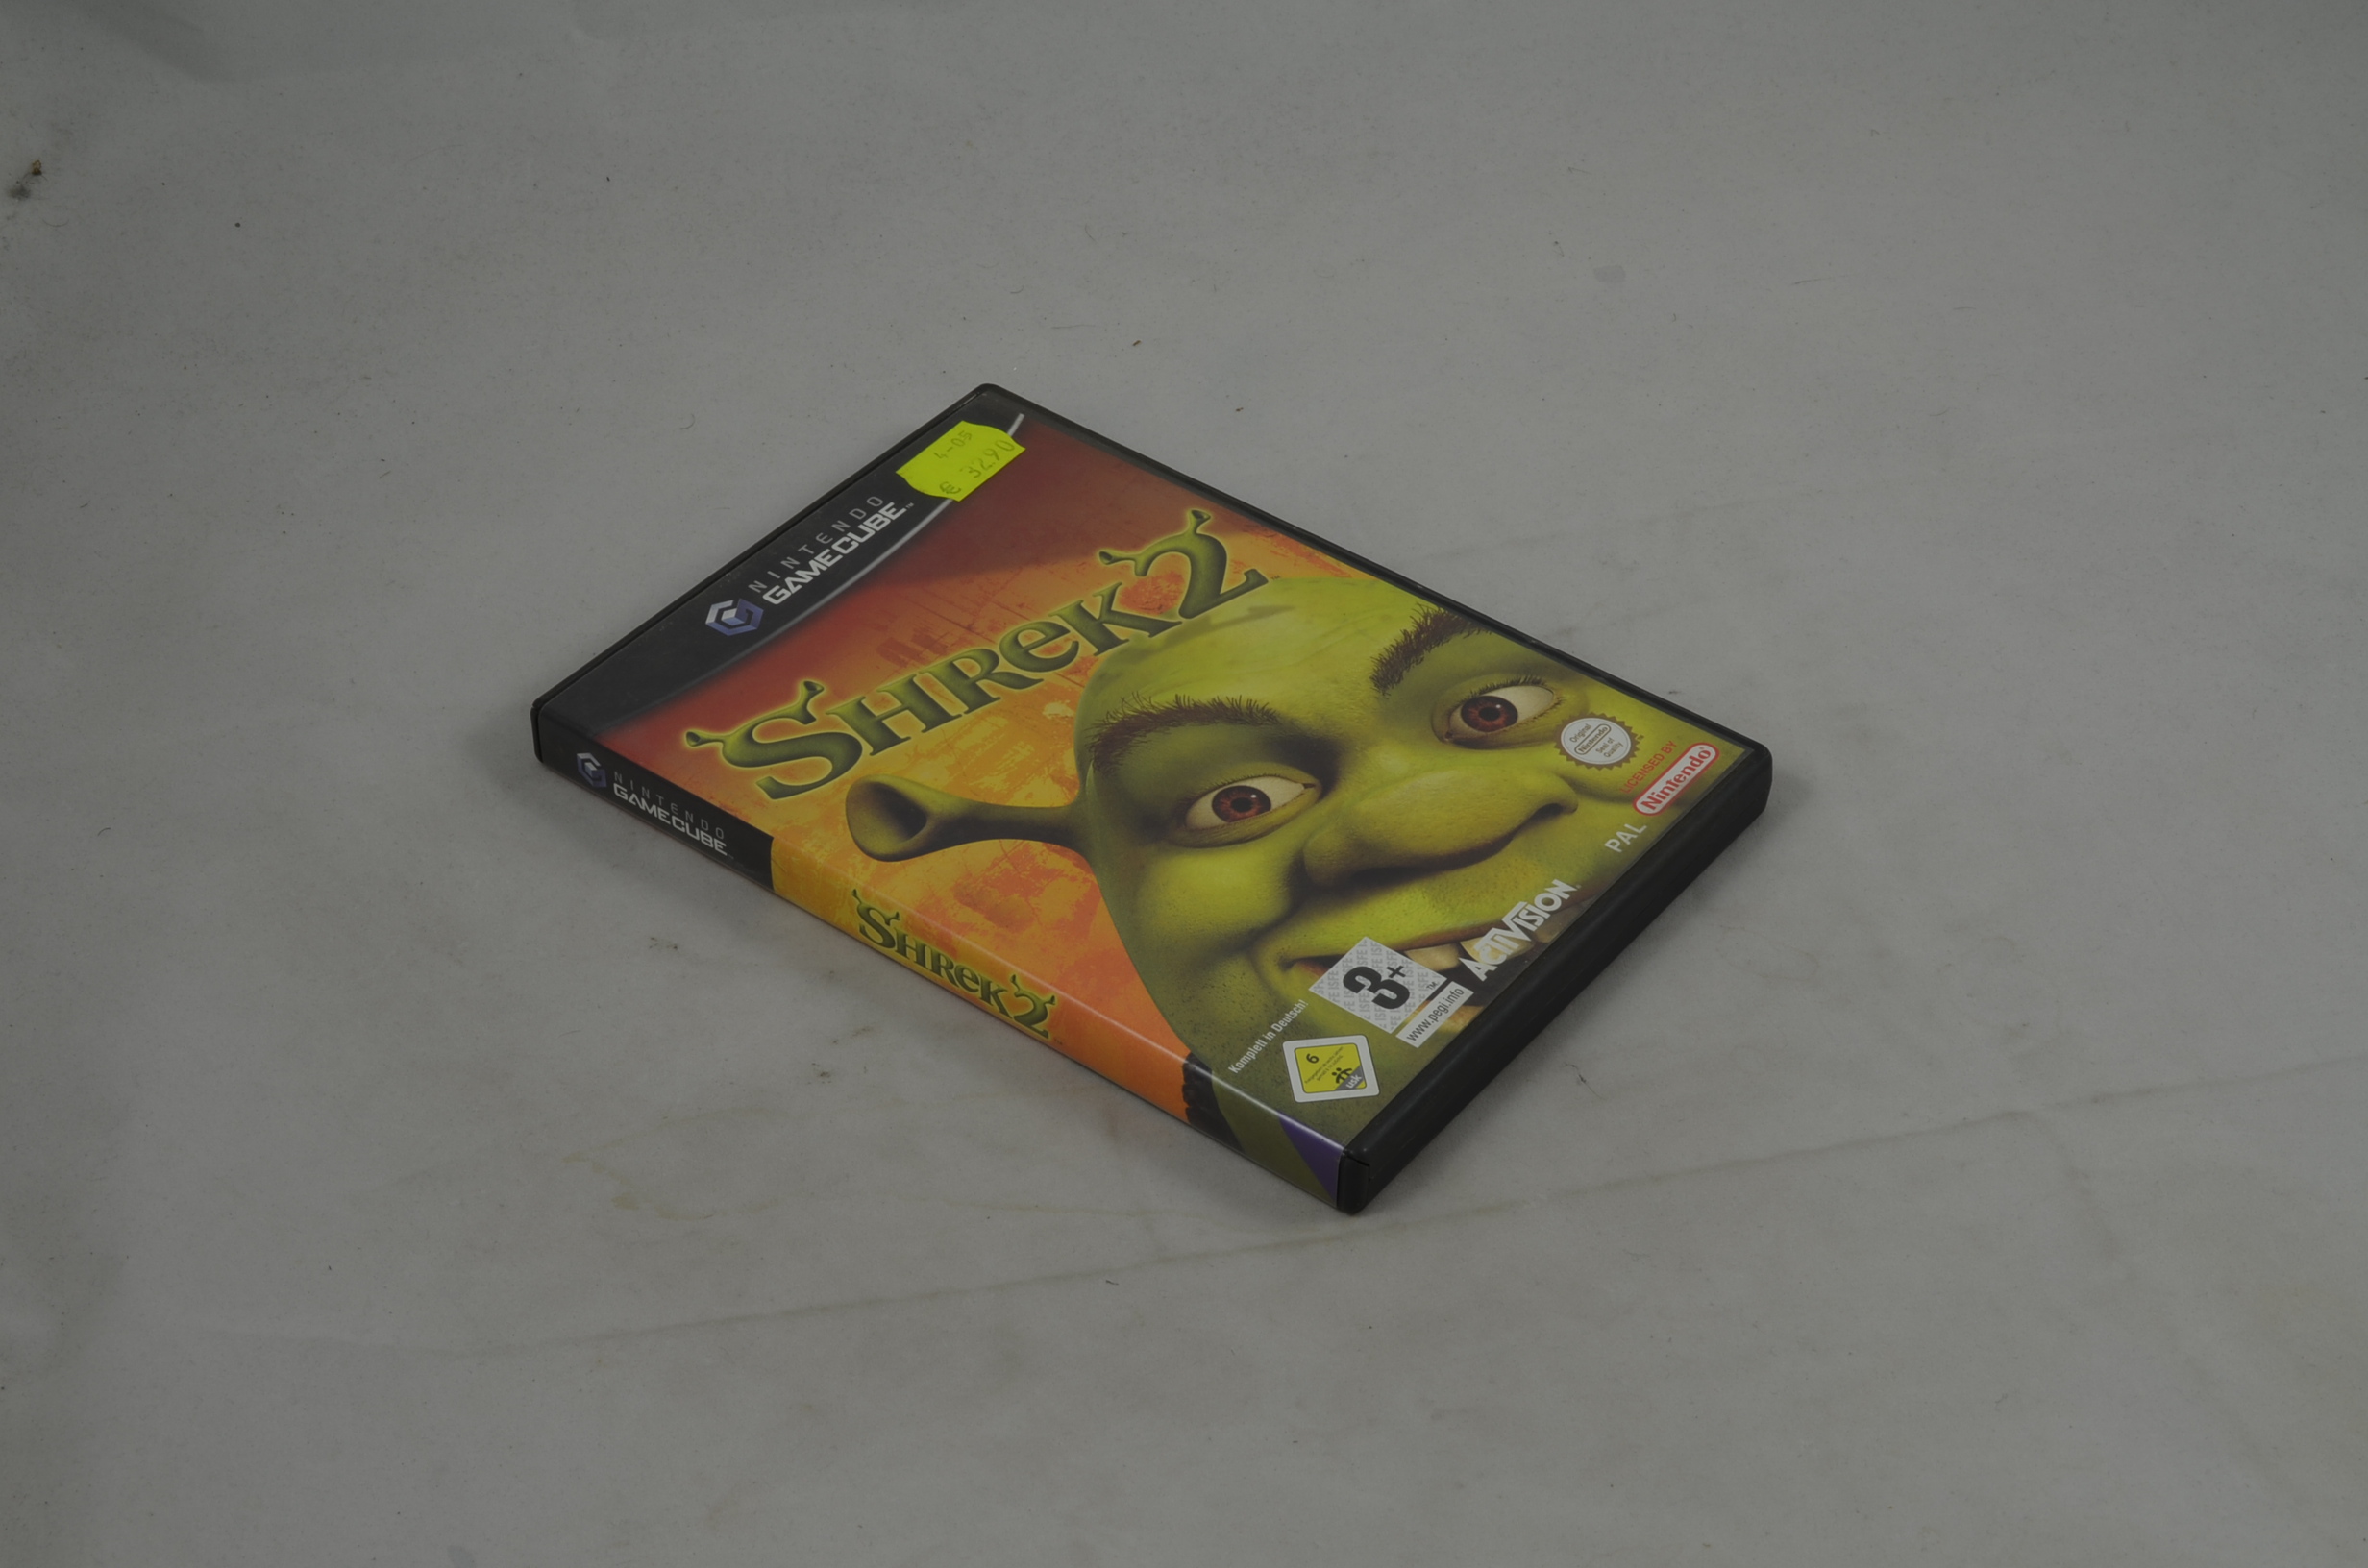 Produktbild von Shrek 2 GameCube Spiel CIB (gut)